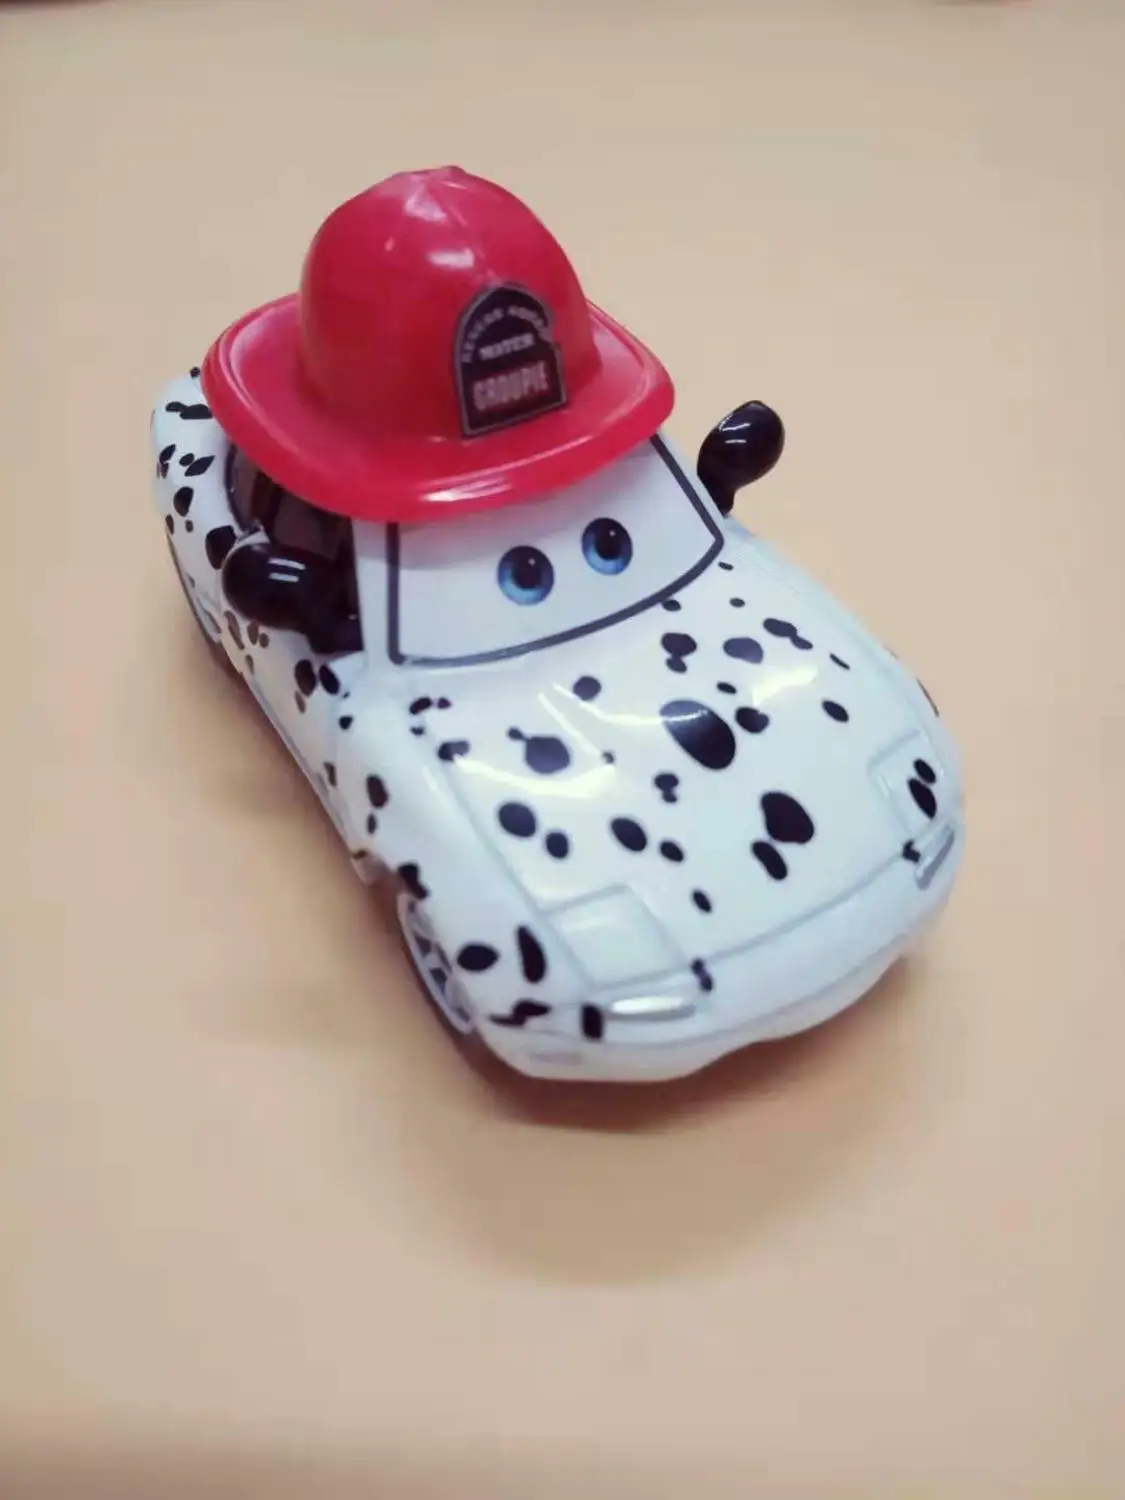 Disney Pixar; автомобили; литье под давлением Металлический Игрушечный Автомобиль королева британского Королевского защитника полицейская королева охранная модель автомобиля подарки мальчик день рождения игрушки - Цвет: Rescue Mater